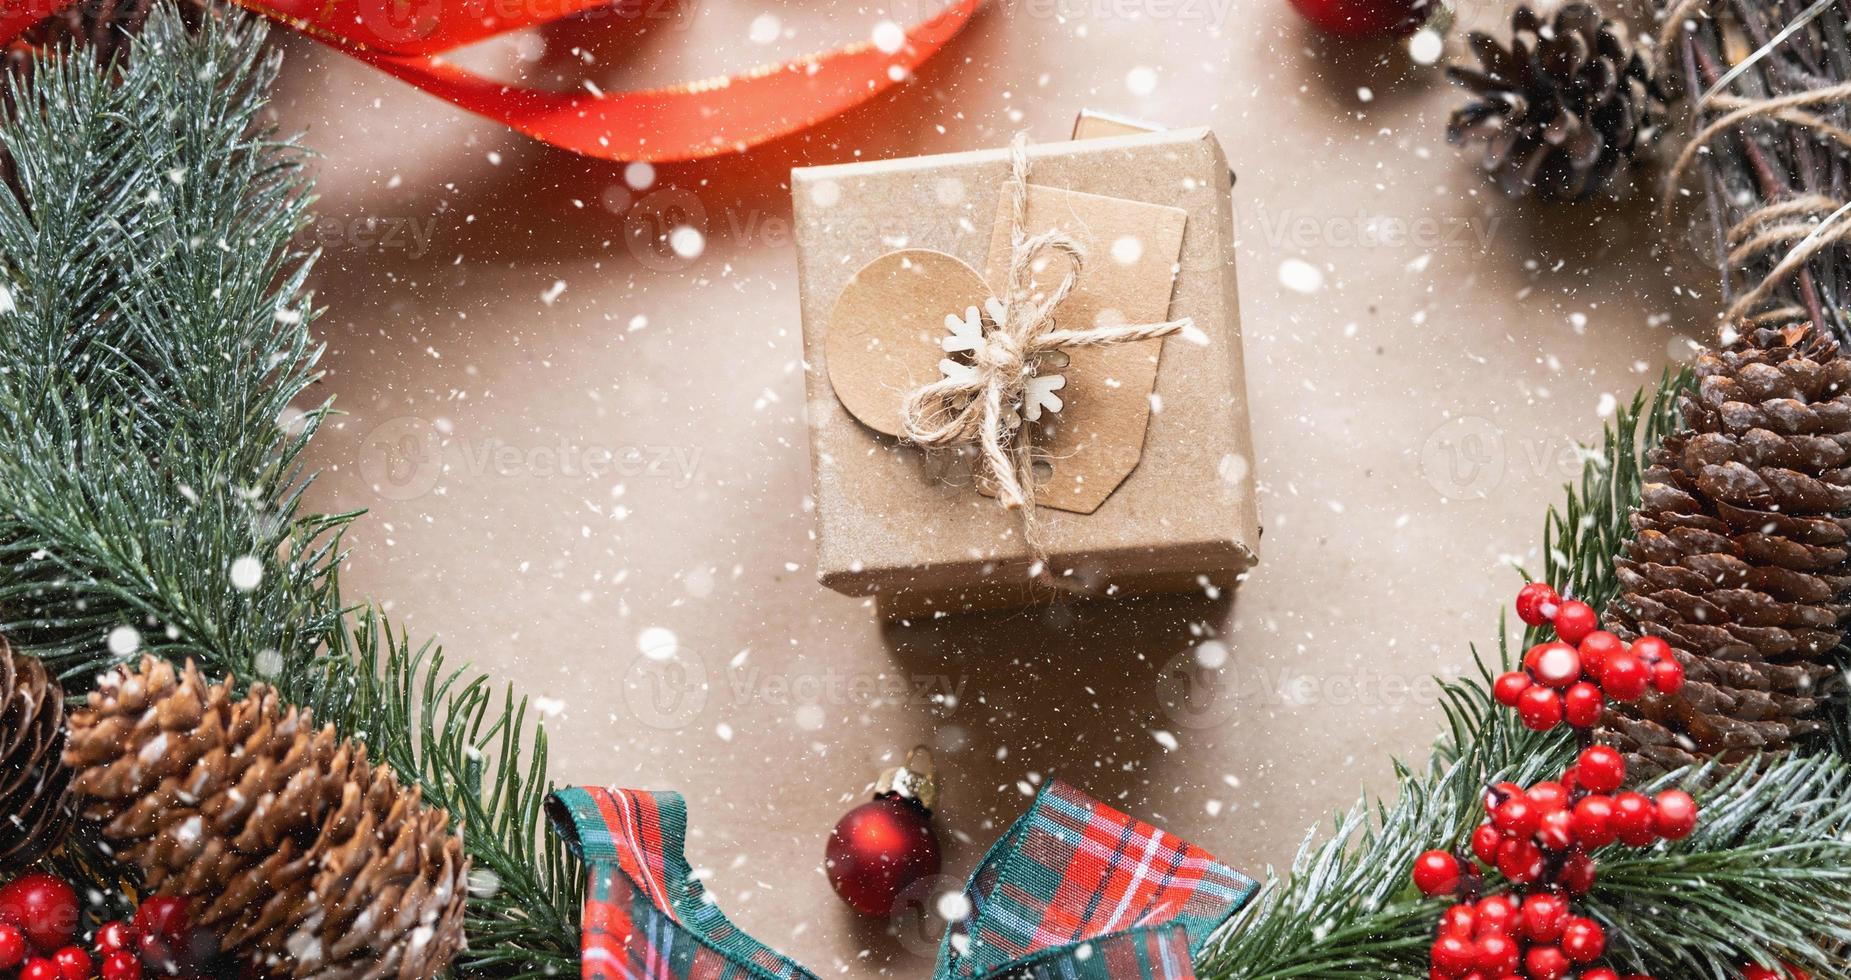 verpacken sie ein geschenk für weihnachten und neujahr in kraftpapier, kegeln, klebeband, schere. tags mit mock-up, natürliches dekor, handgemacht, diy. Festliche Stimmung. Flatlay, Hintergrund foto